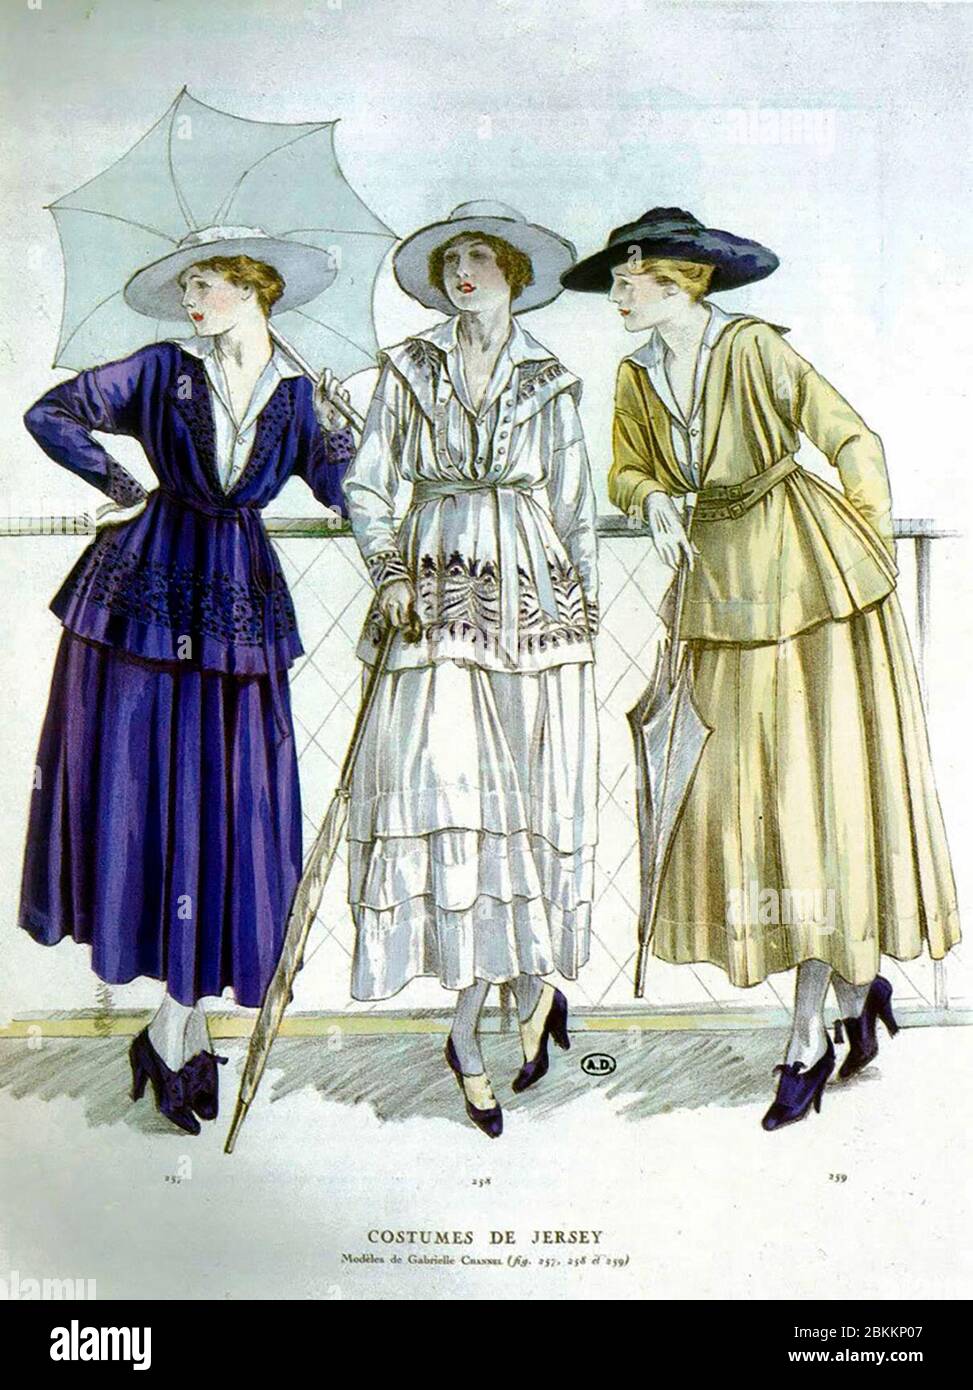 Illustration montrant trois femmes en tenue de jour par 'Gabrielle Channel' (sic) composé de vestes tunique ceinture et de jupes en jersey pour mars 1917 Banque D'Images